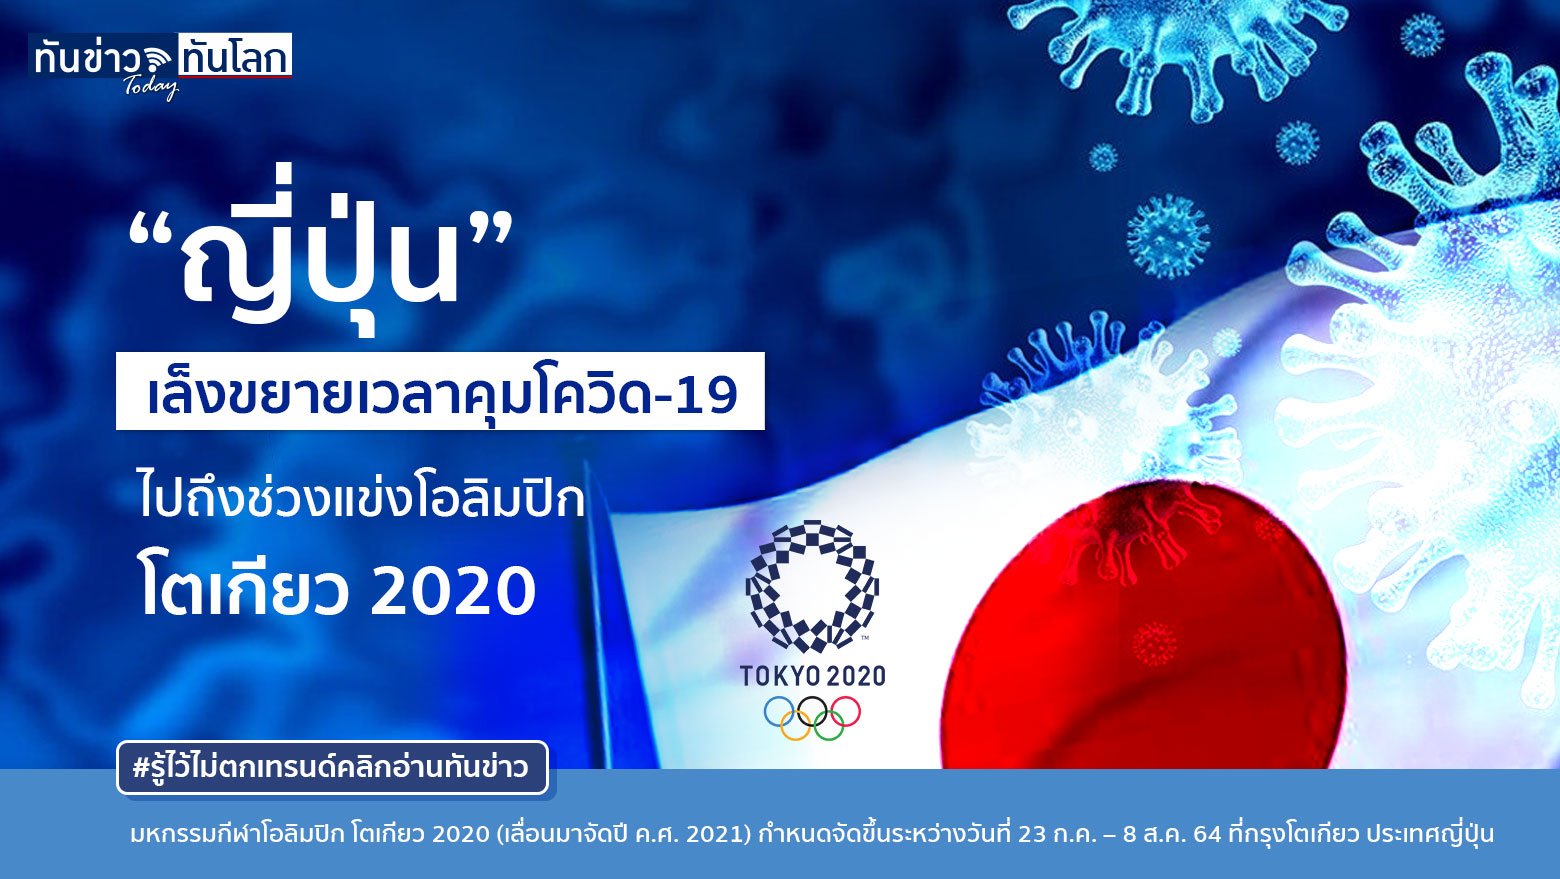 “ญี่ปุ่น” เล็งขยายเวลาคุมโควิด-19 ไปถึงช่วงแข่งโอลิมปิก โตเกียว 2020